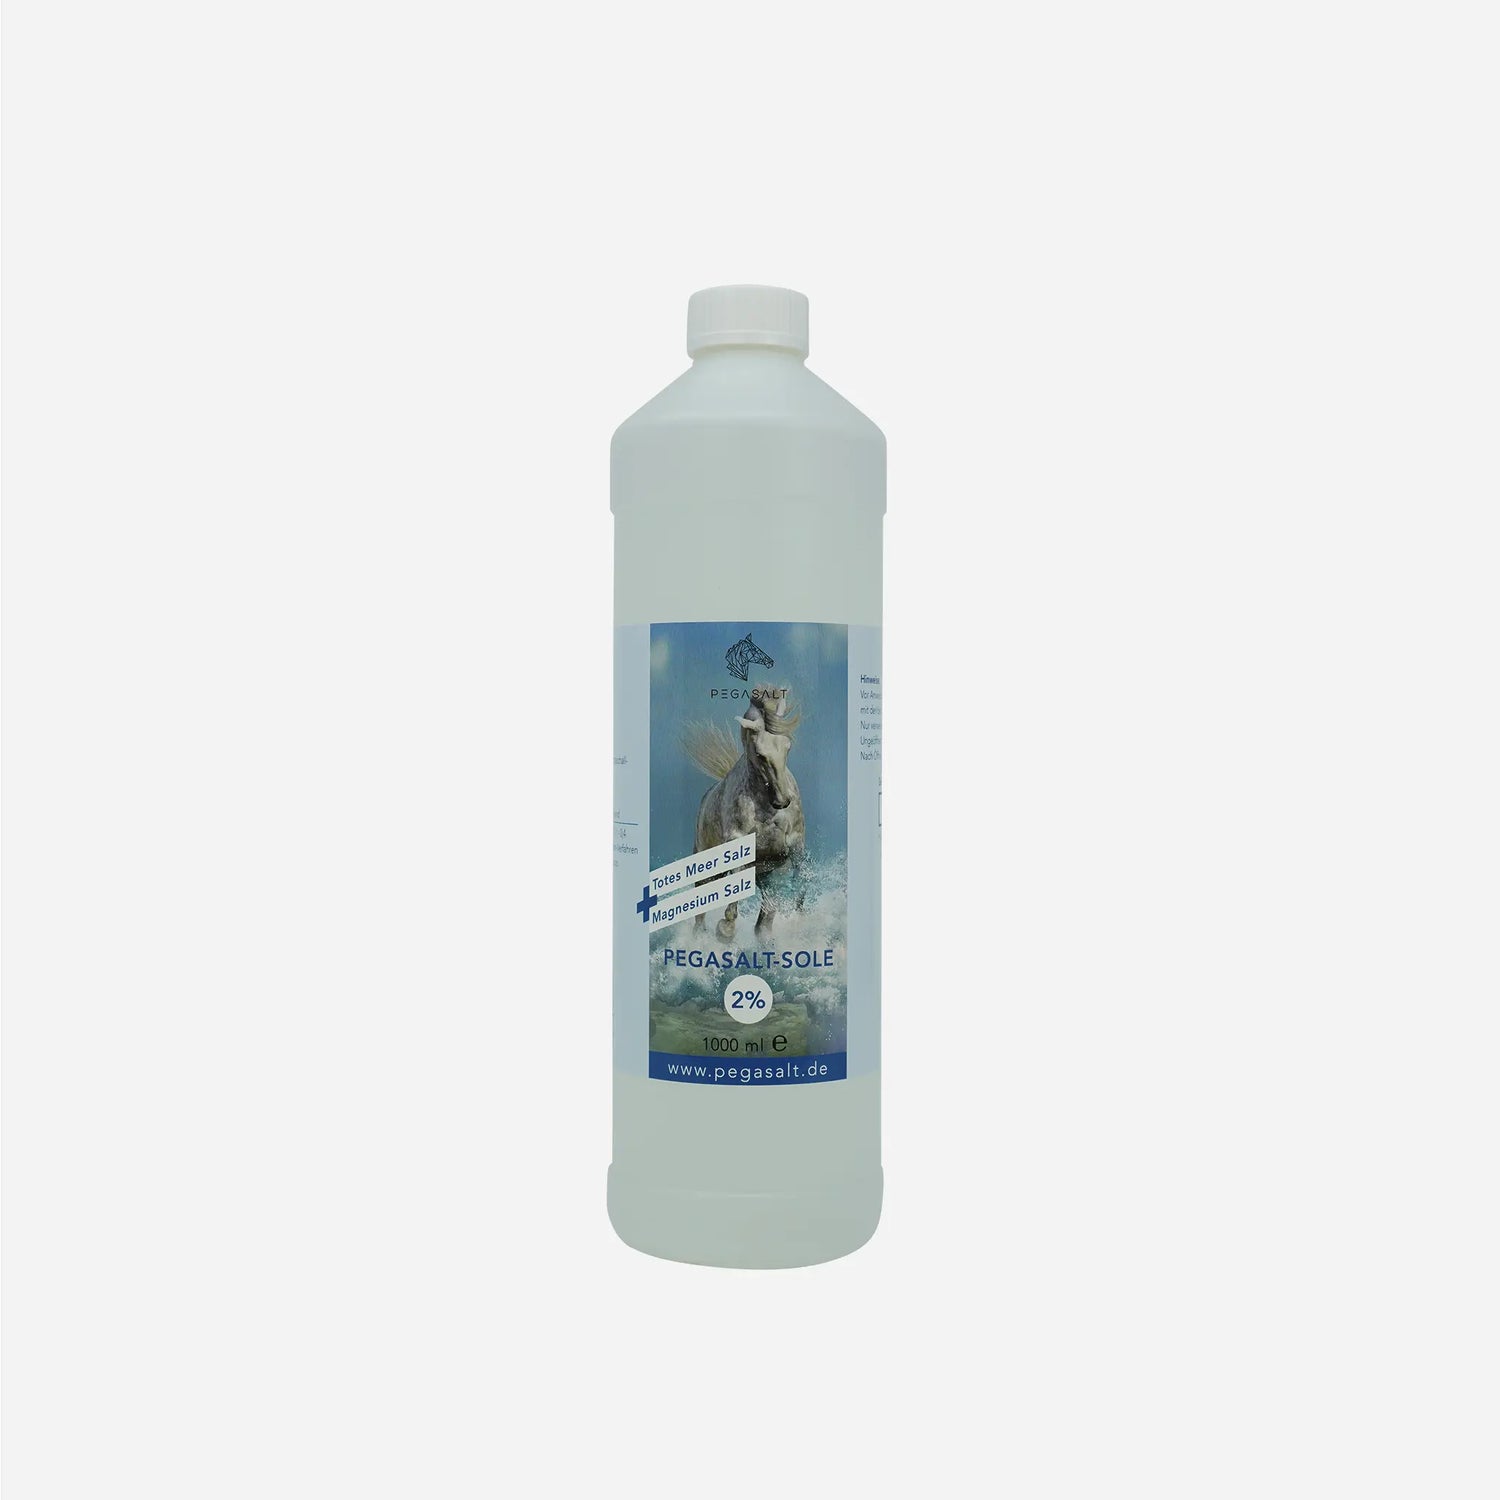 Pegasalt-Sole für Pferde zum Inhalieren | mit Salz vom Toten Meer 1000 ml | PEGASALT